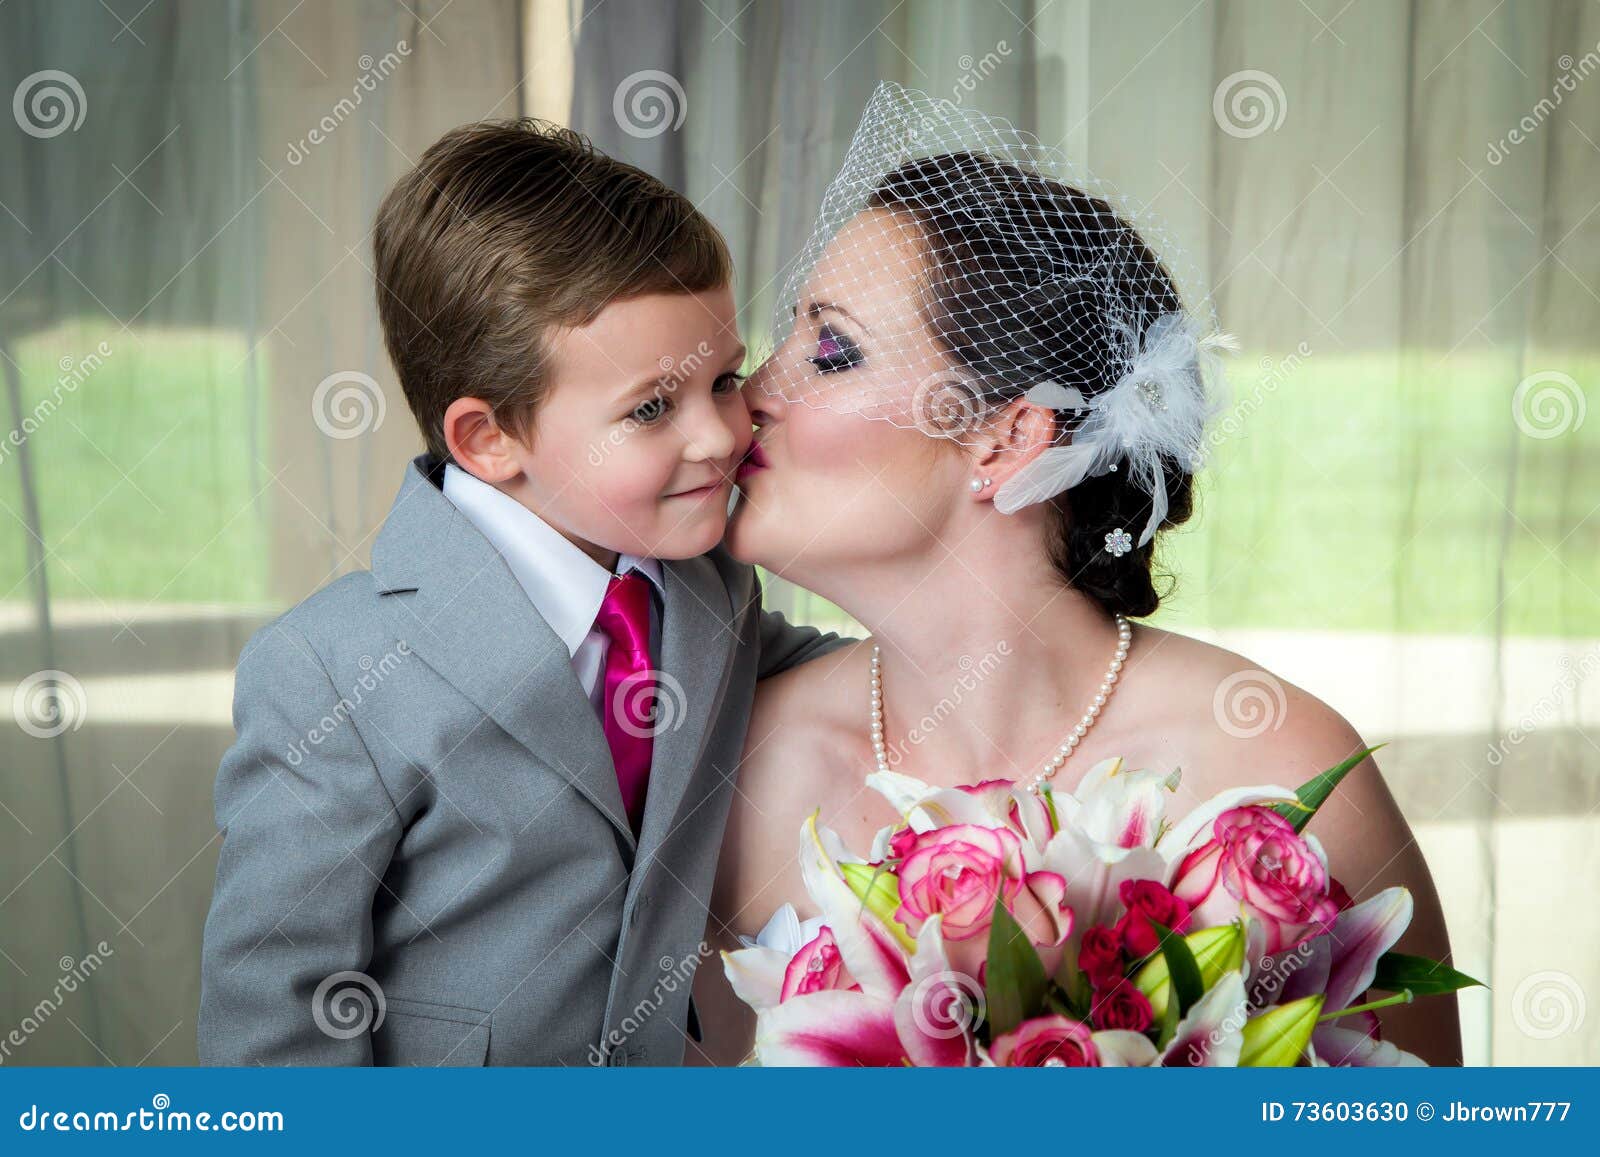 Мать сын свадьба. Свадьба мальчика и мамы. Мама целует сына на свадьбе. Мама и сын поженились. Женился на маме.